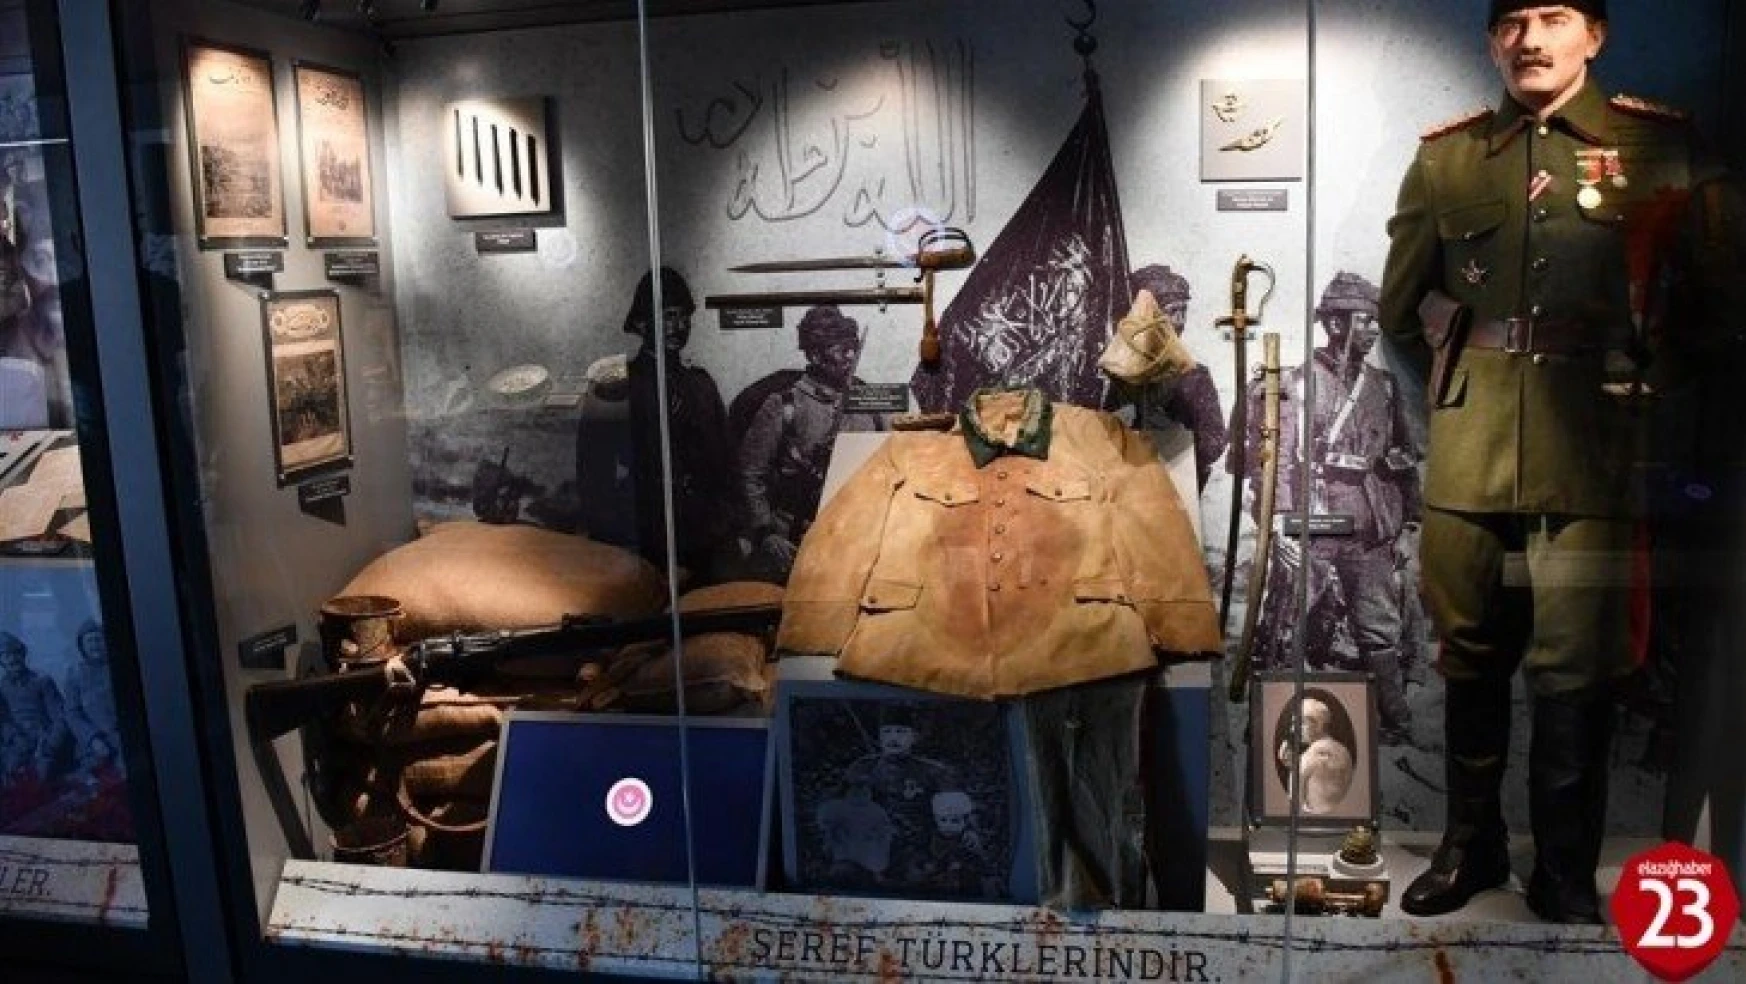 Çanakkale Muharebeleri Mobil Müzesi 2 gün Elazığ'da olacak